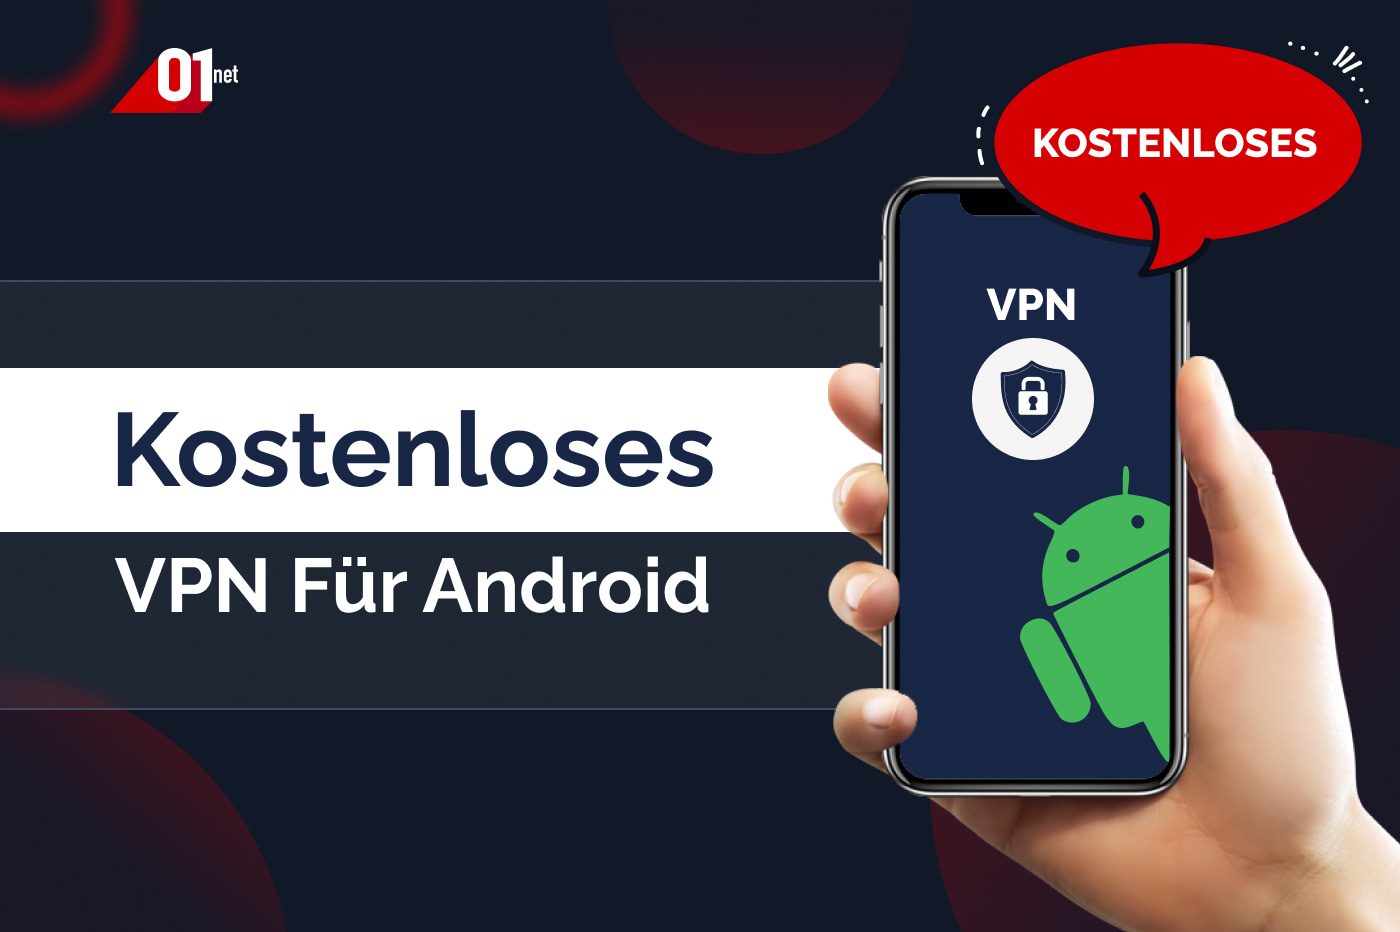 Kostenloses VPN für Android